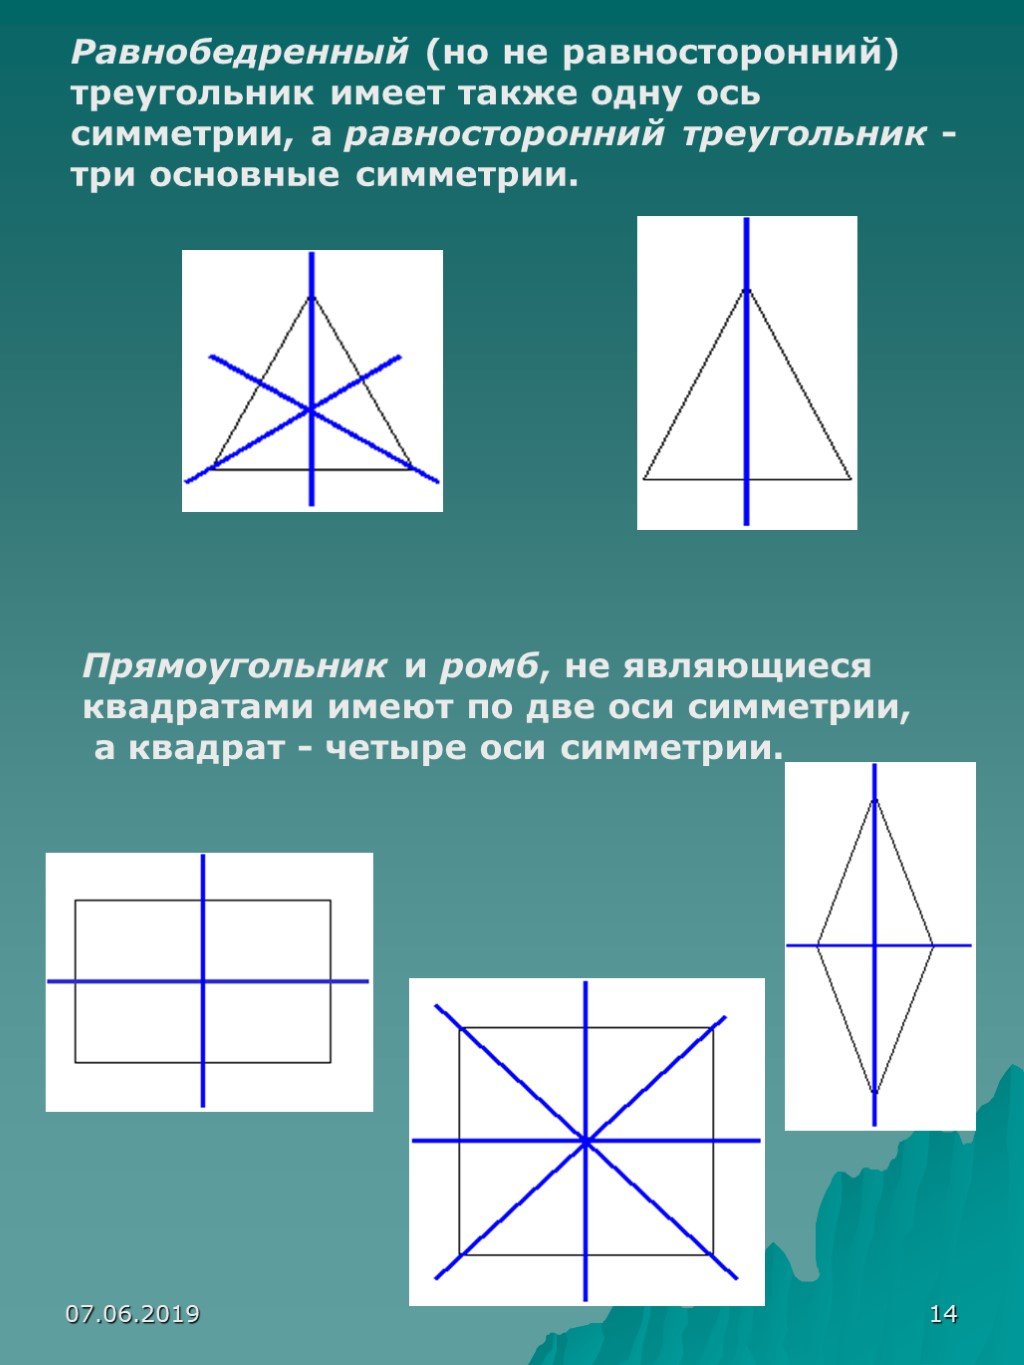 У прямоугольника 2 оси. Оси симметрии квадрата. ОСБ симметрии в треугольнике. ОСТ симетрии треугольника. ОСТ стмметрии у прямоугольник.